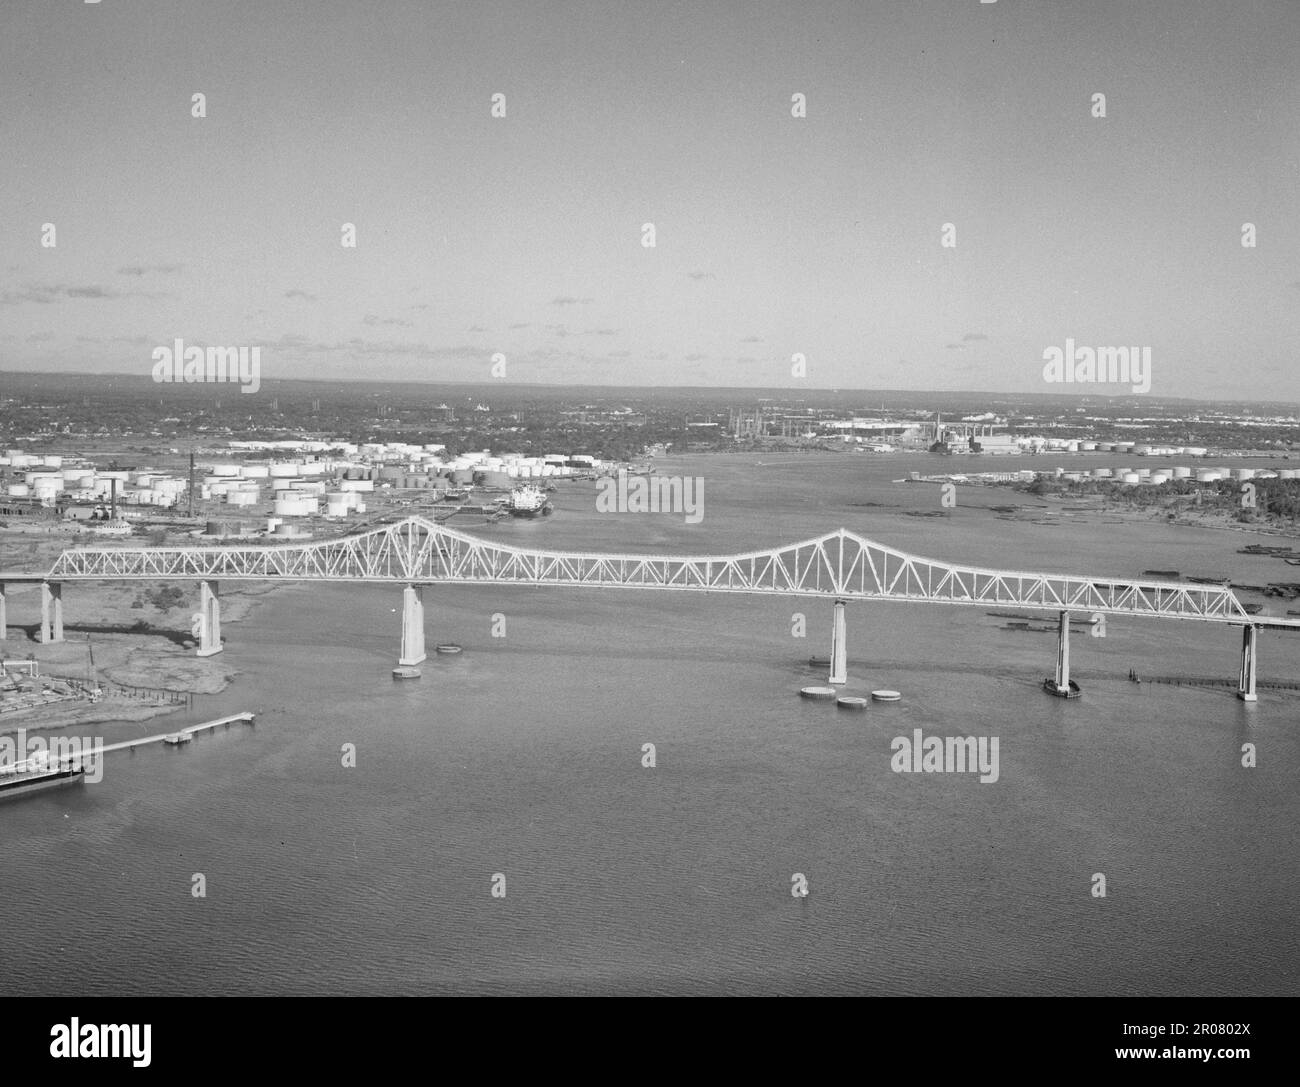 Campata a sbalzo di Outerbridge che attraversa il ponte in quota - Outerbridge Crossing Bridge, Spanning Arthur Kill dal New Jersey a Staten Island, 1991 Foto Stock